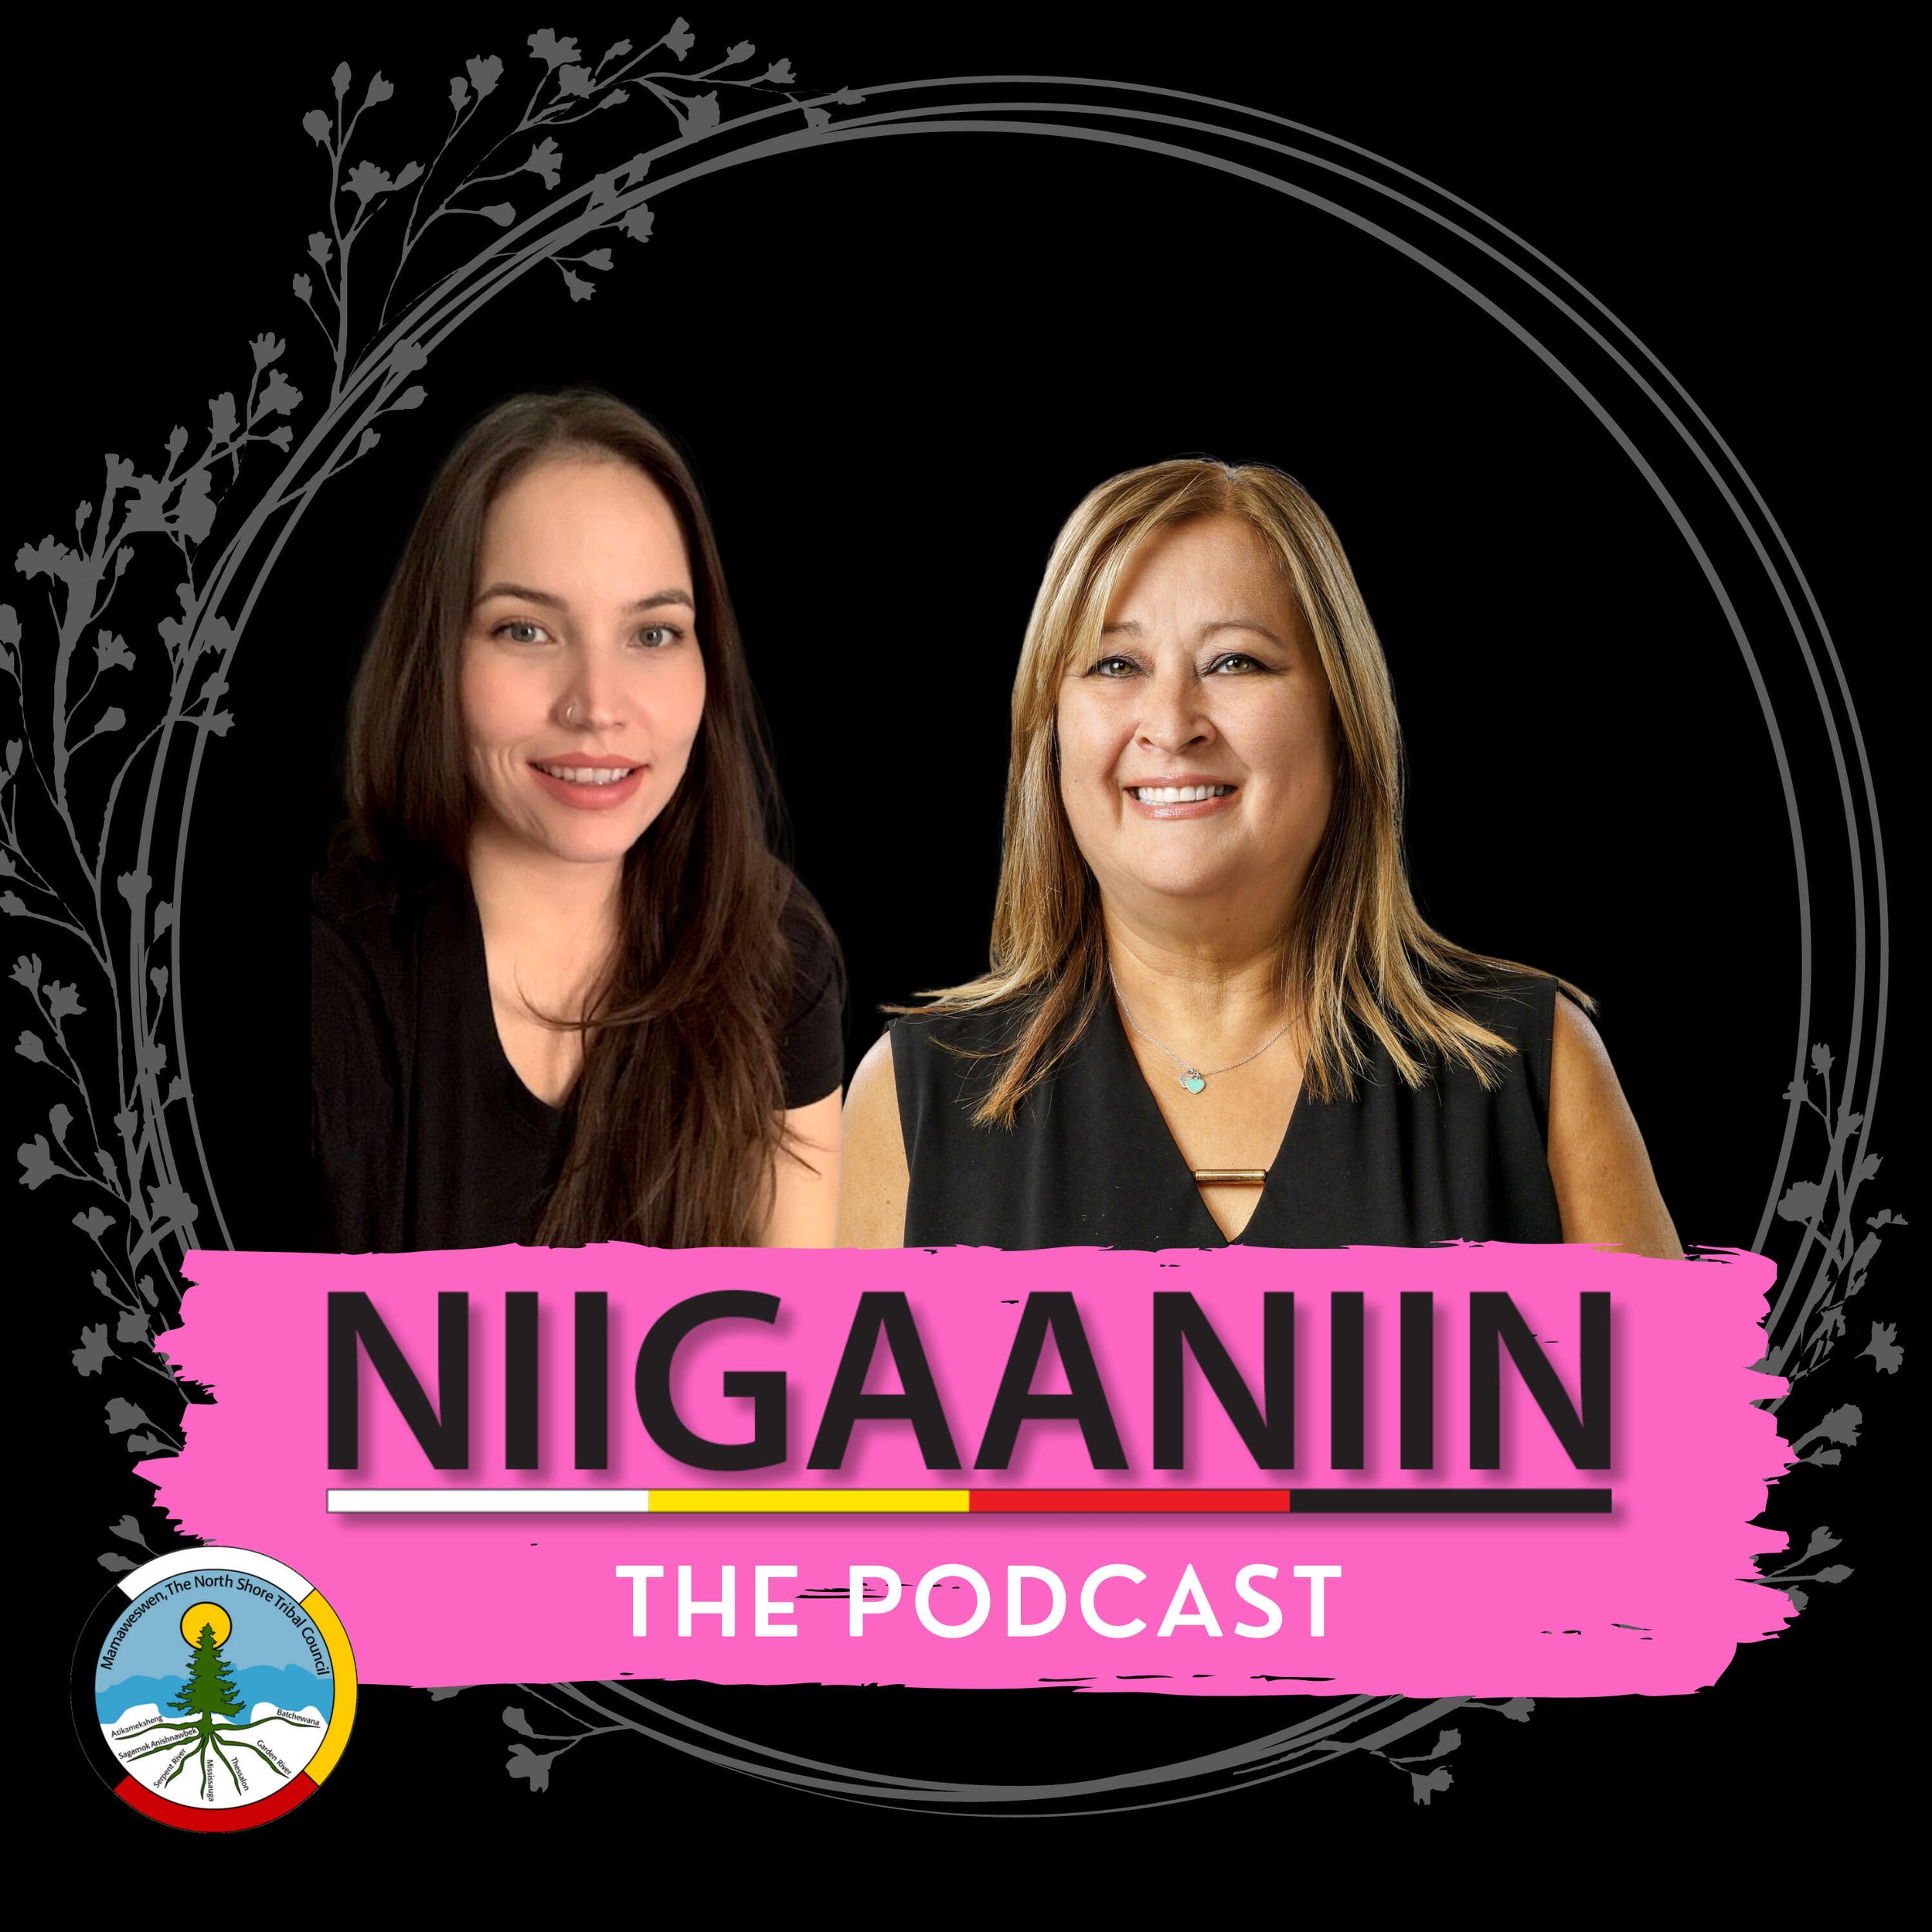 The Niigaaniin Podcast